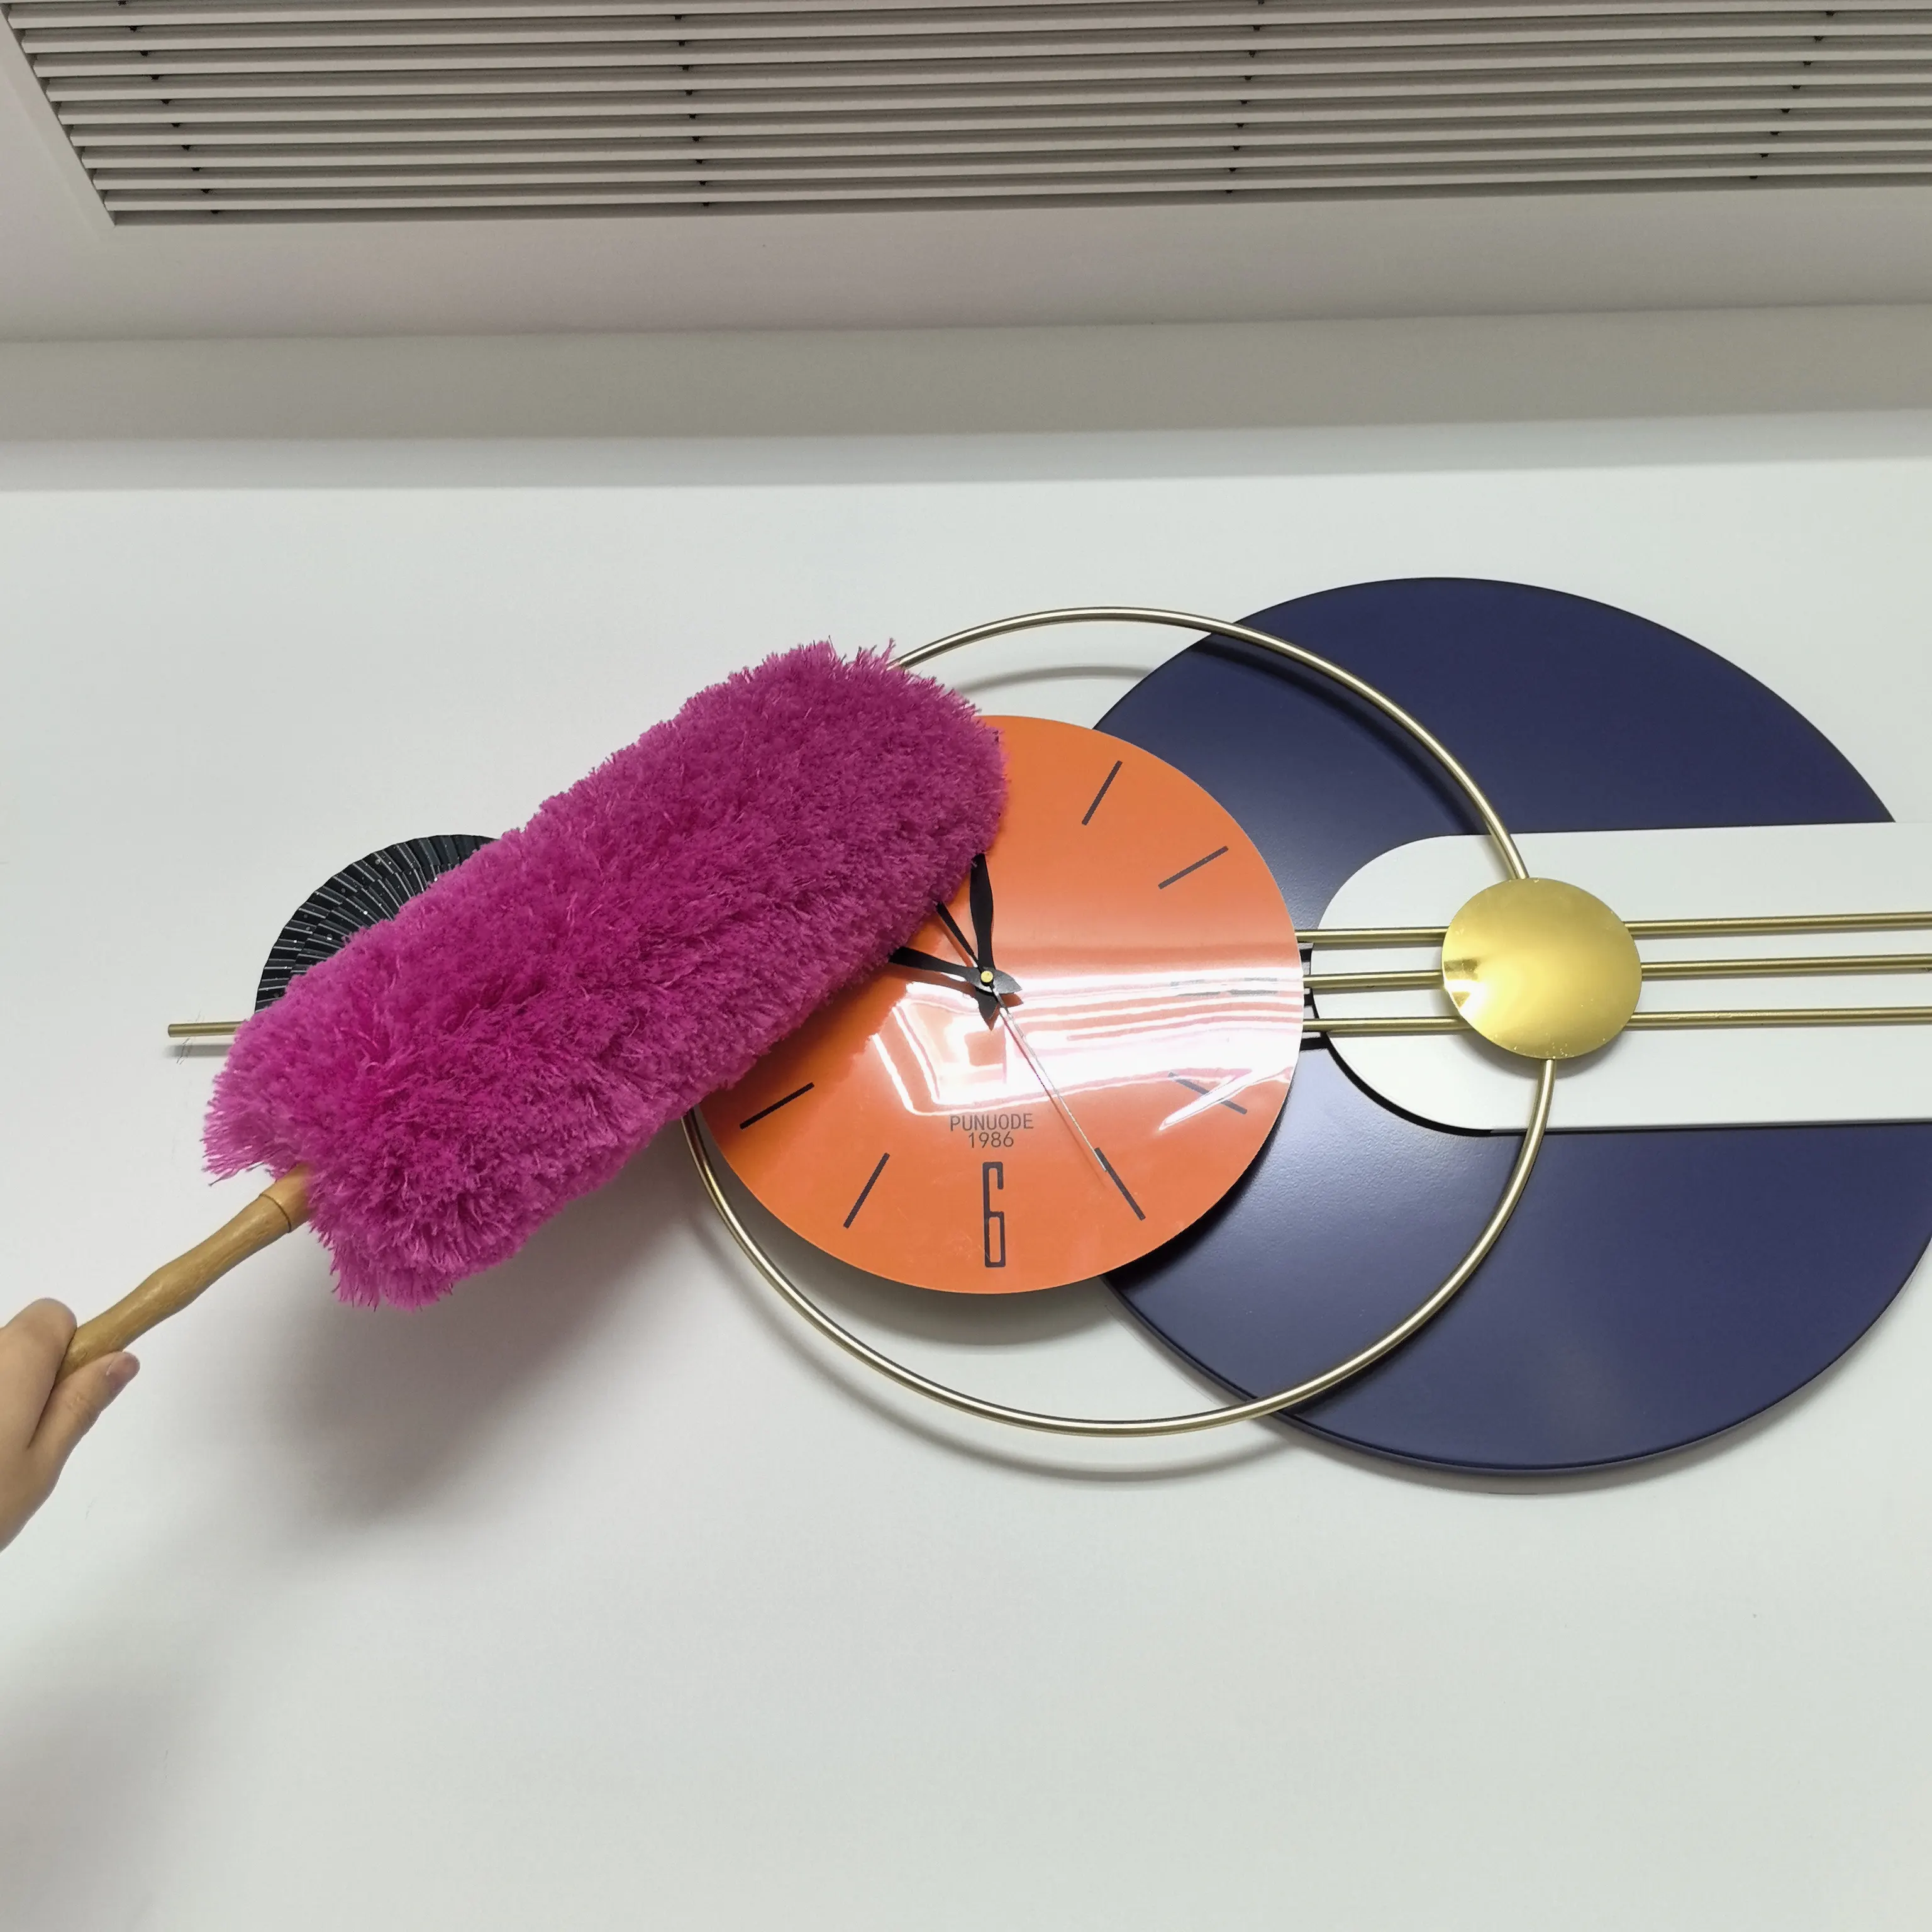 Pluizig Nylon Duster Houten Handvat Duster Microfiber Stofdoek Voor Huishoudelijke Reiniging